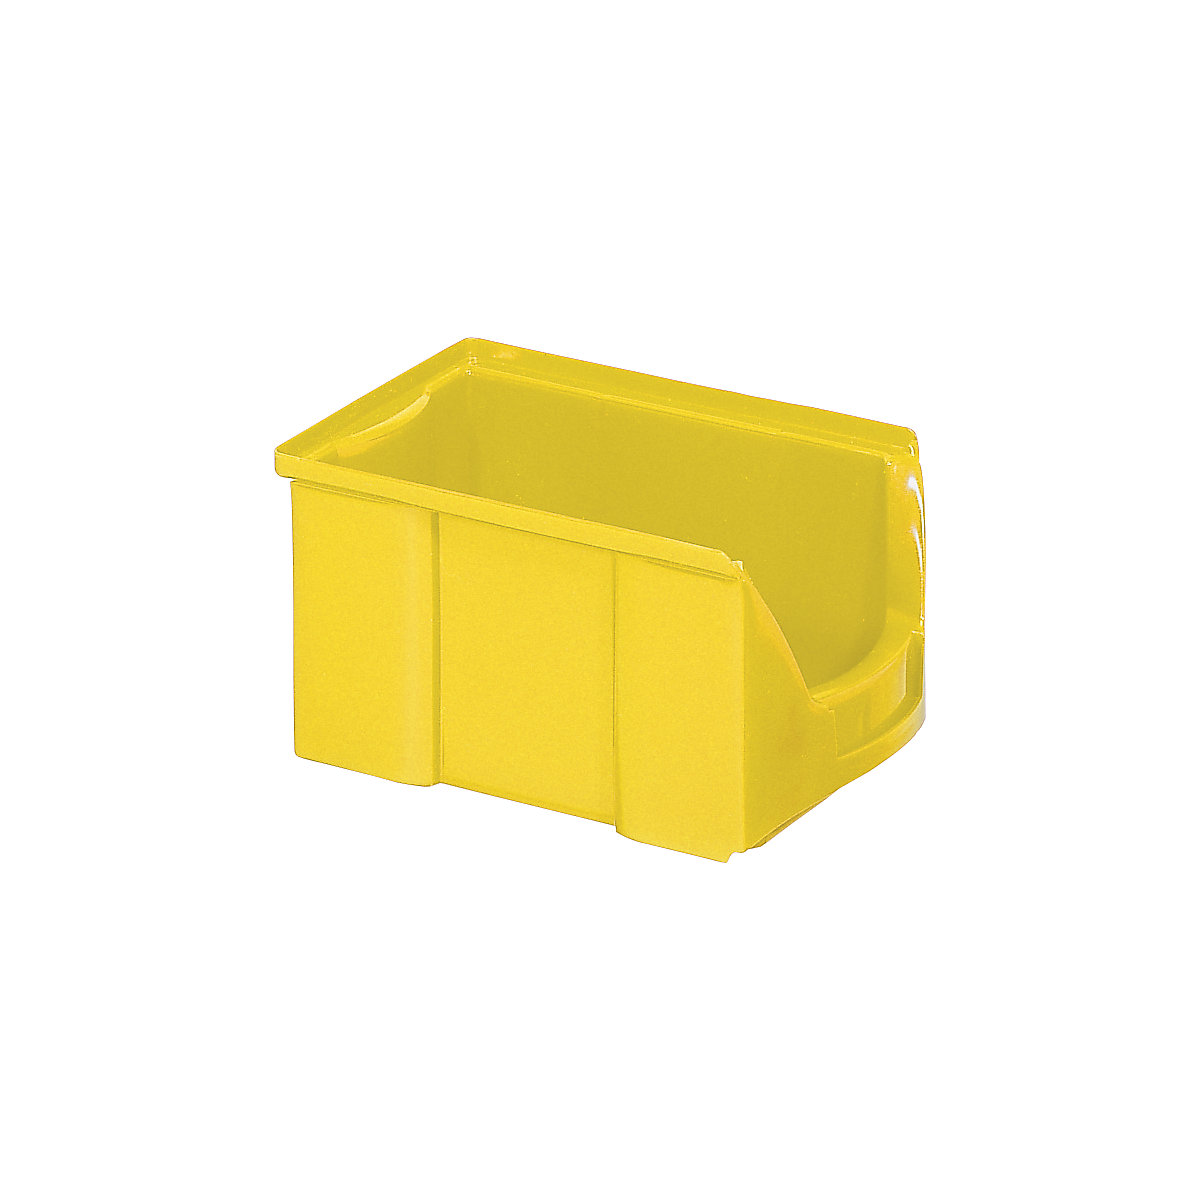 FUTURA-Sichtlagerkasten aus Polyethylen, LxBxH 229 x 148 x 122 mm, VE 25 Stk, gelb-16